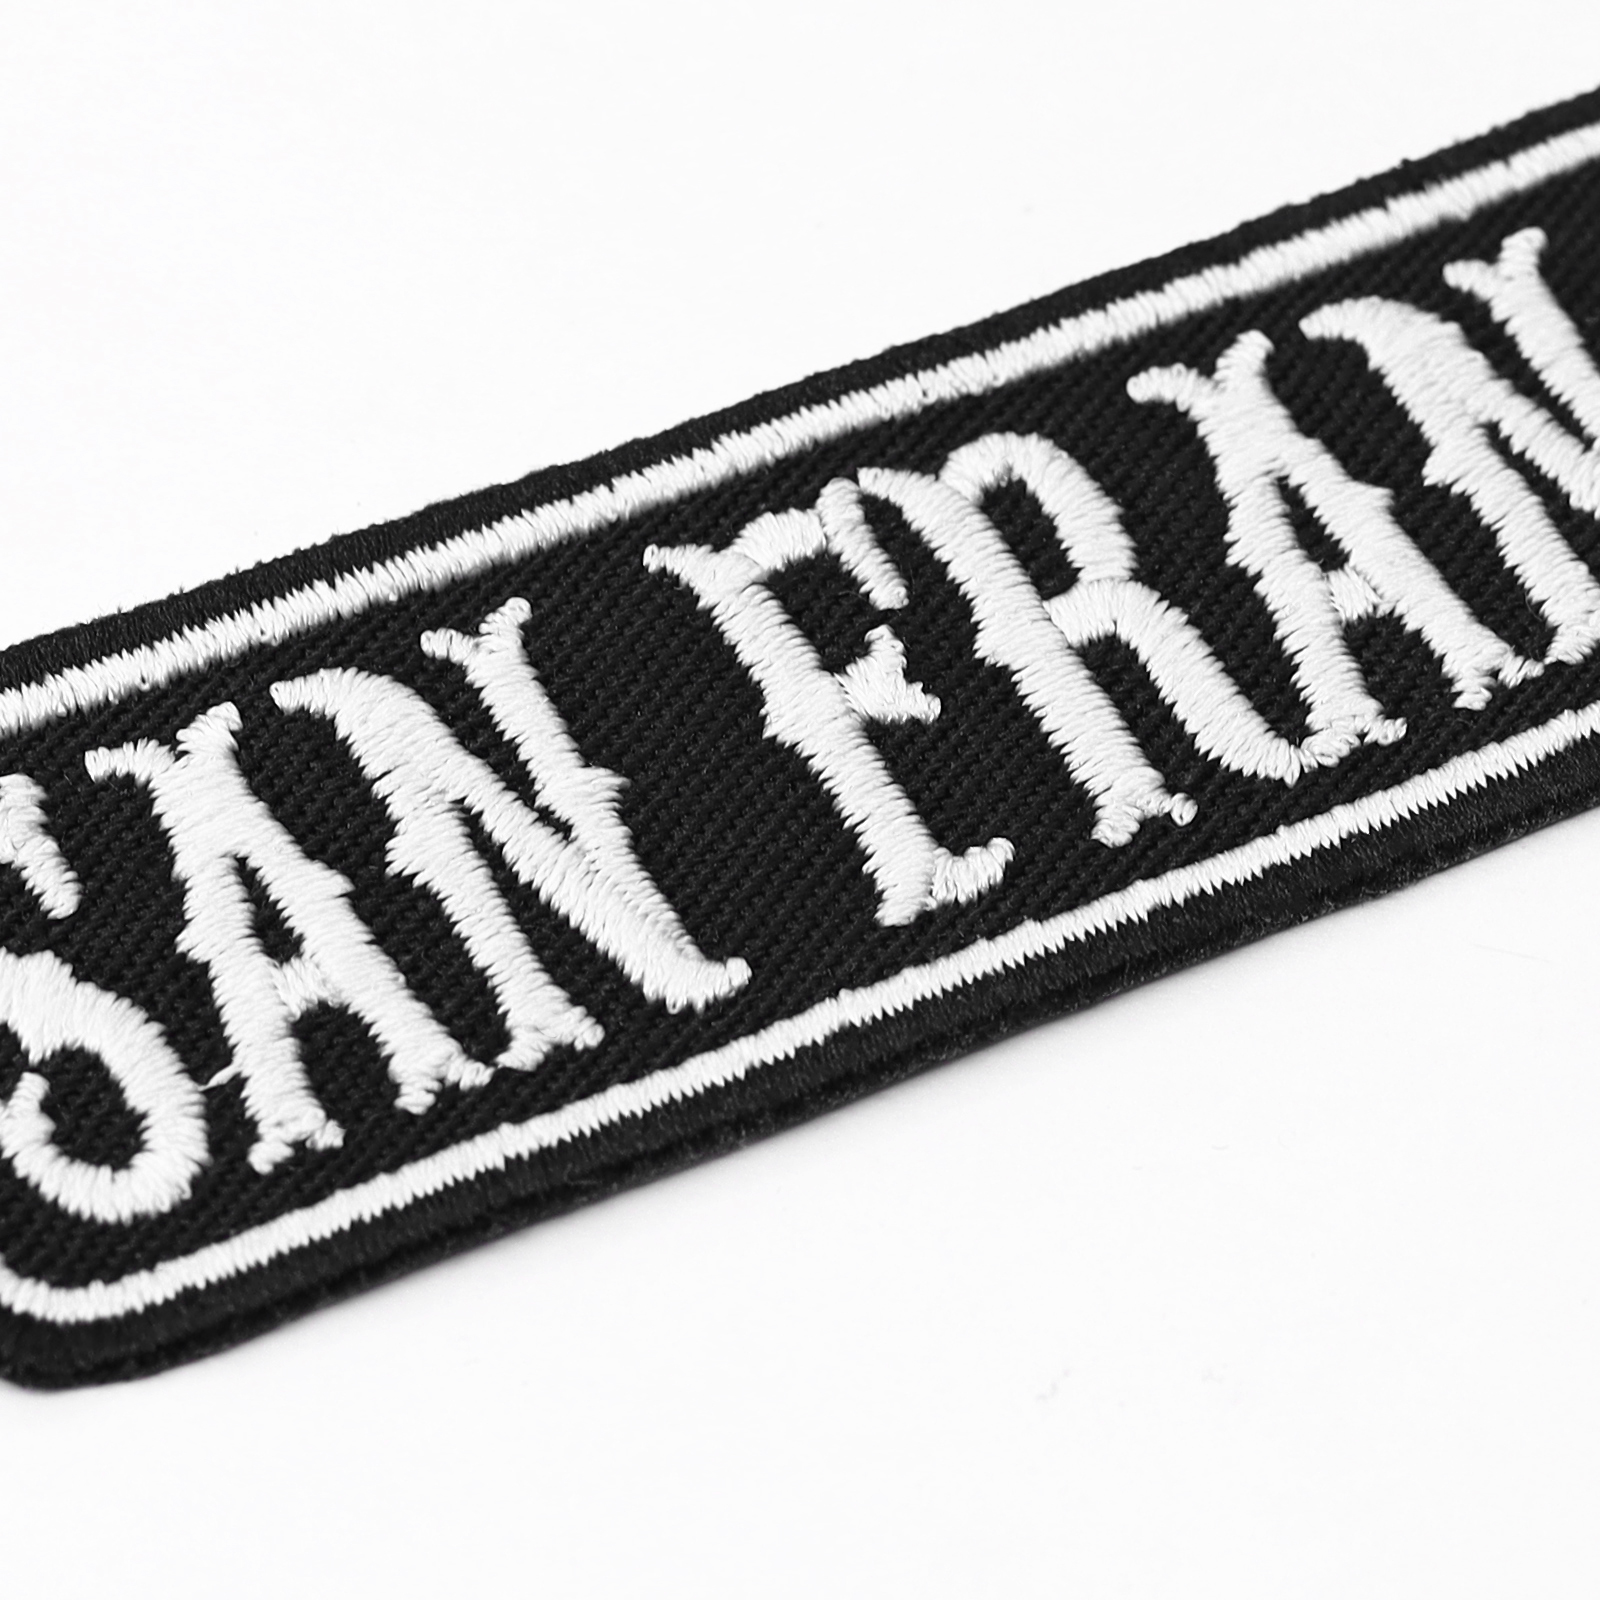 San Francisco - Patch